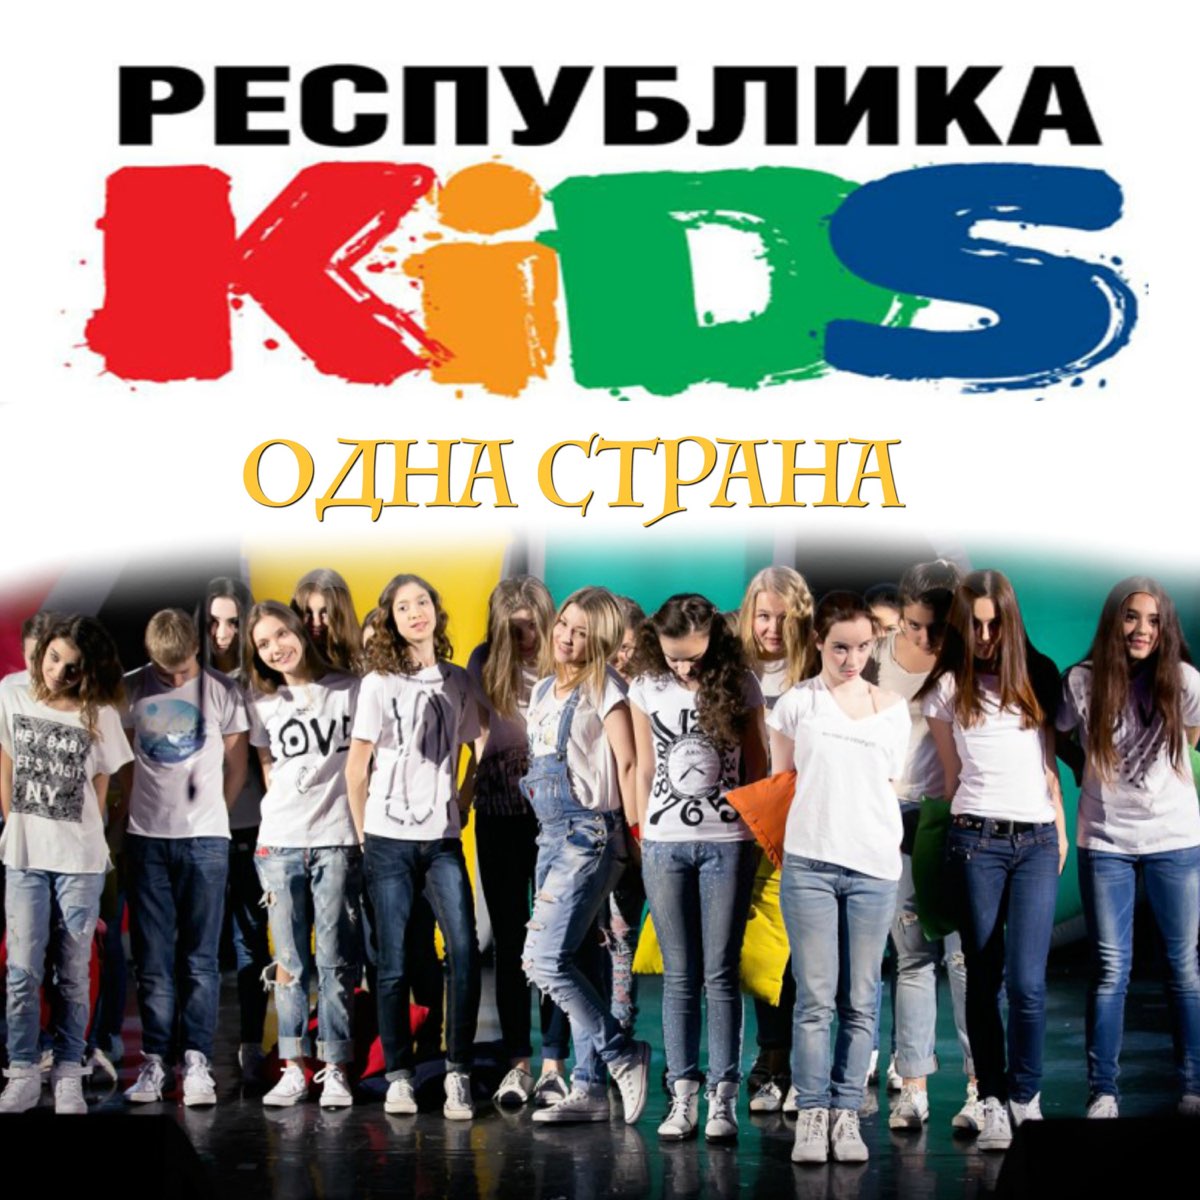 Опен кидс мир. Республика Kids. Republika группа обложка. Песня мир без войны open Kids. Yes Respublik Kids отзывы.